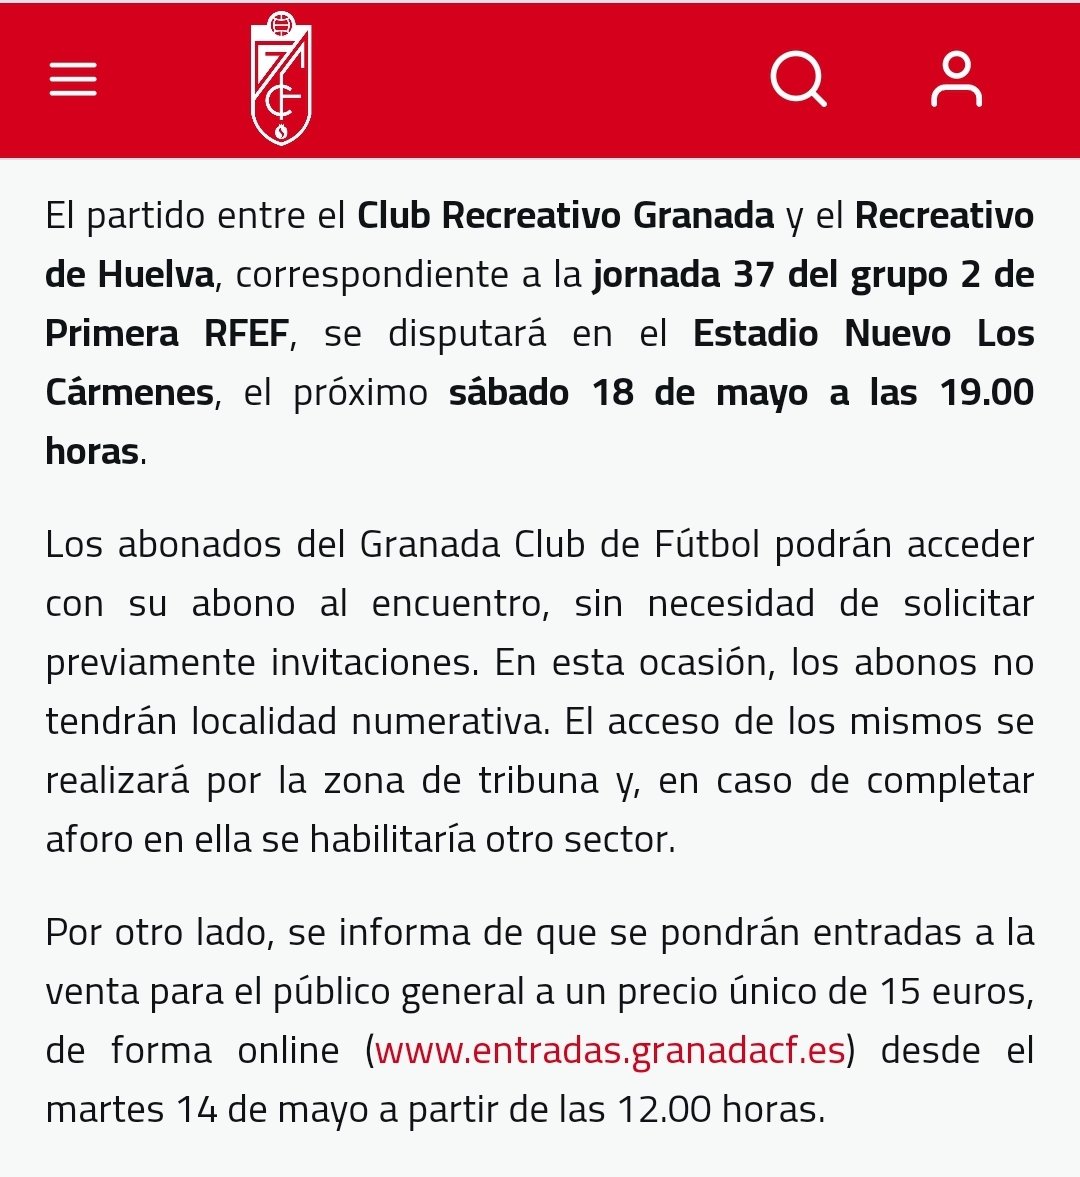 El @GranadaCF vuelve a conseguir luz barata y le permite dejar las entradas del #RecreGranadaRecre a 15€ como toda la temporada... #futmasc #PrimeraRFEF #PrimeraFederación #rivalesCCF